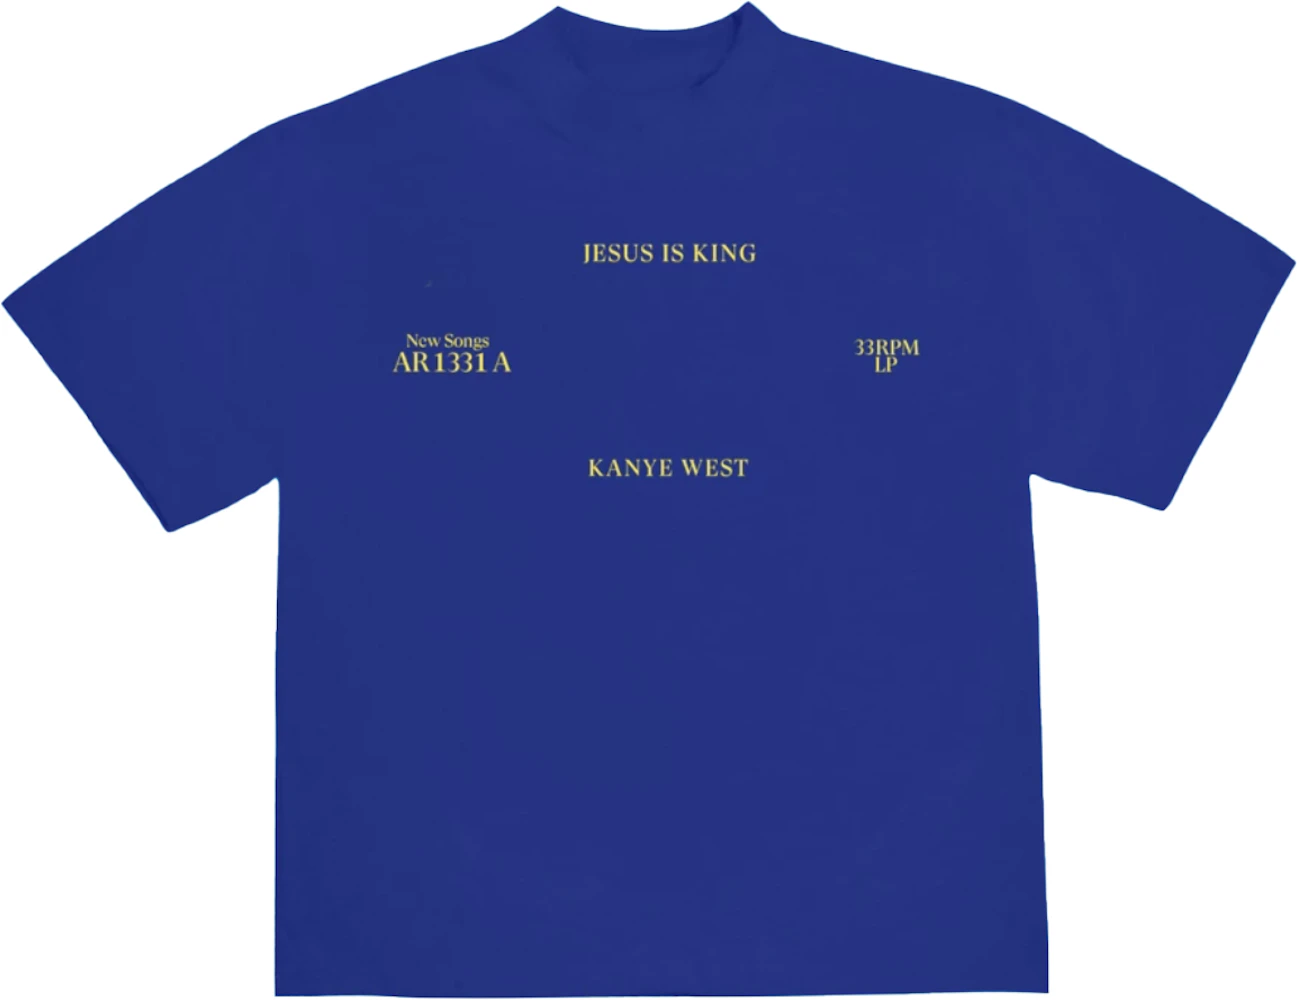 https://images.stockx.com/images/Kanye-West-Jesus-Is-King-Vinyl-I-T-Shirt-Blue.png?fit=fill&bg=FFFFFF&w=700&h=500&fm=webp&auto=compress&q=90&dpr=2&trim=color&updated_at=1621458642